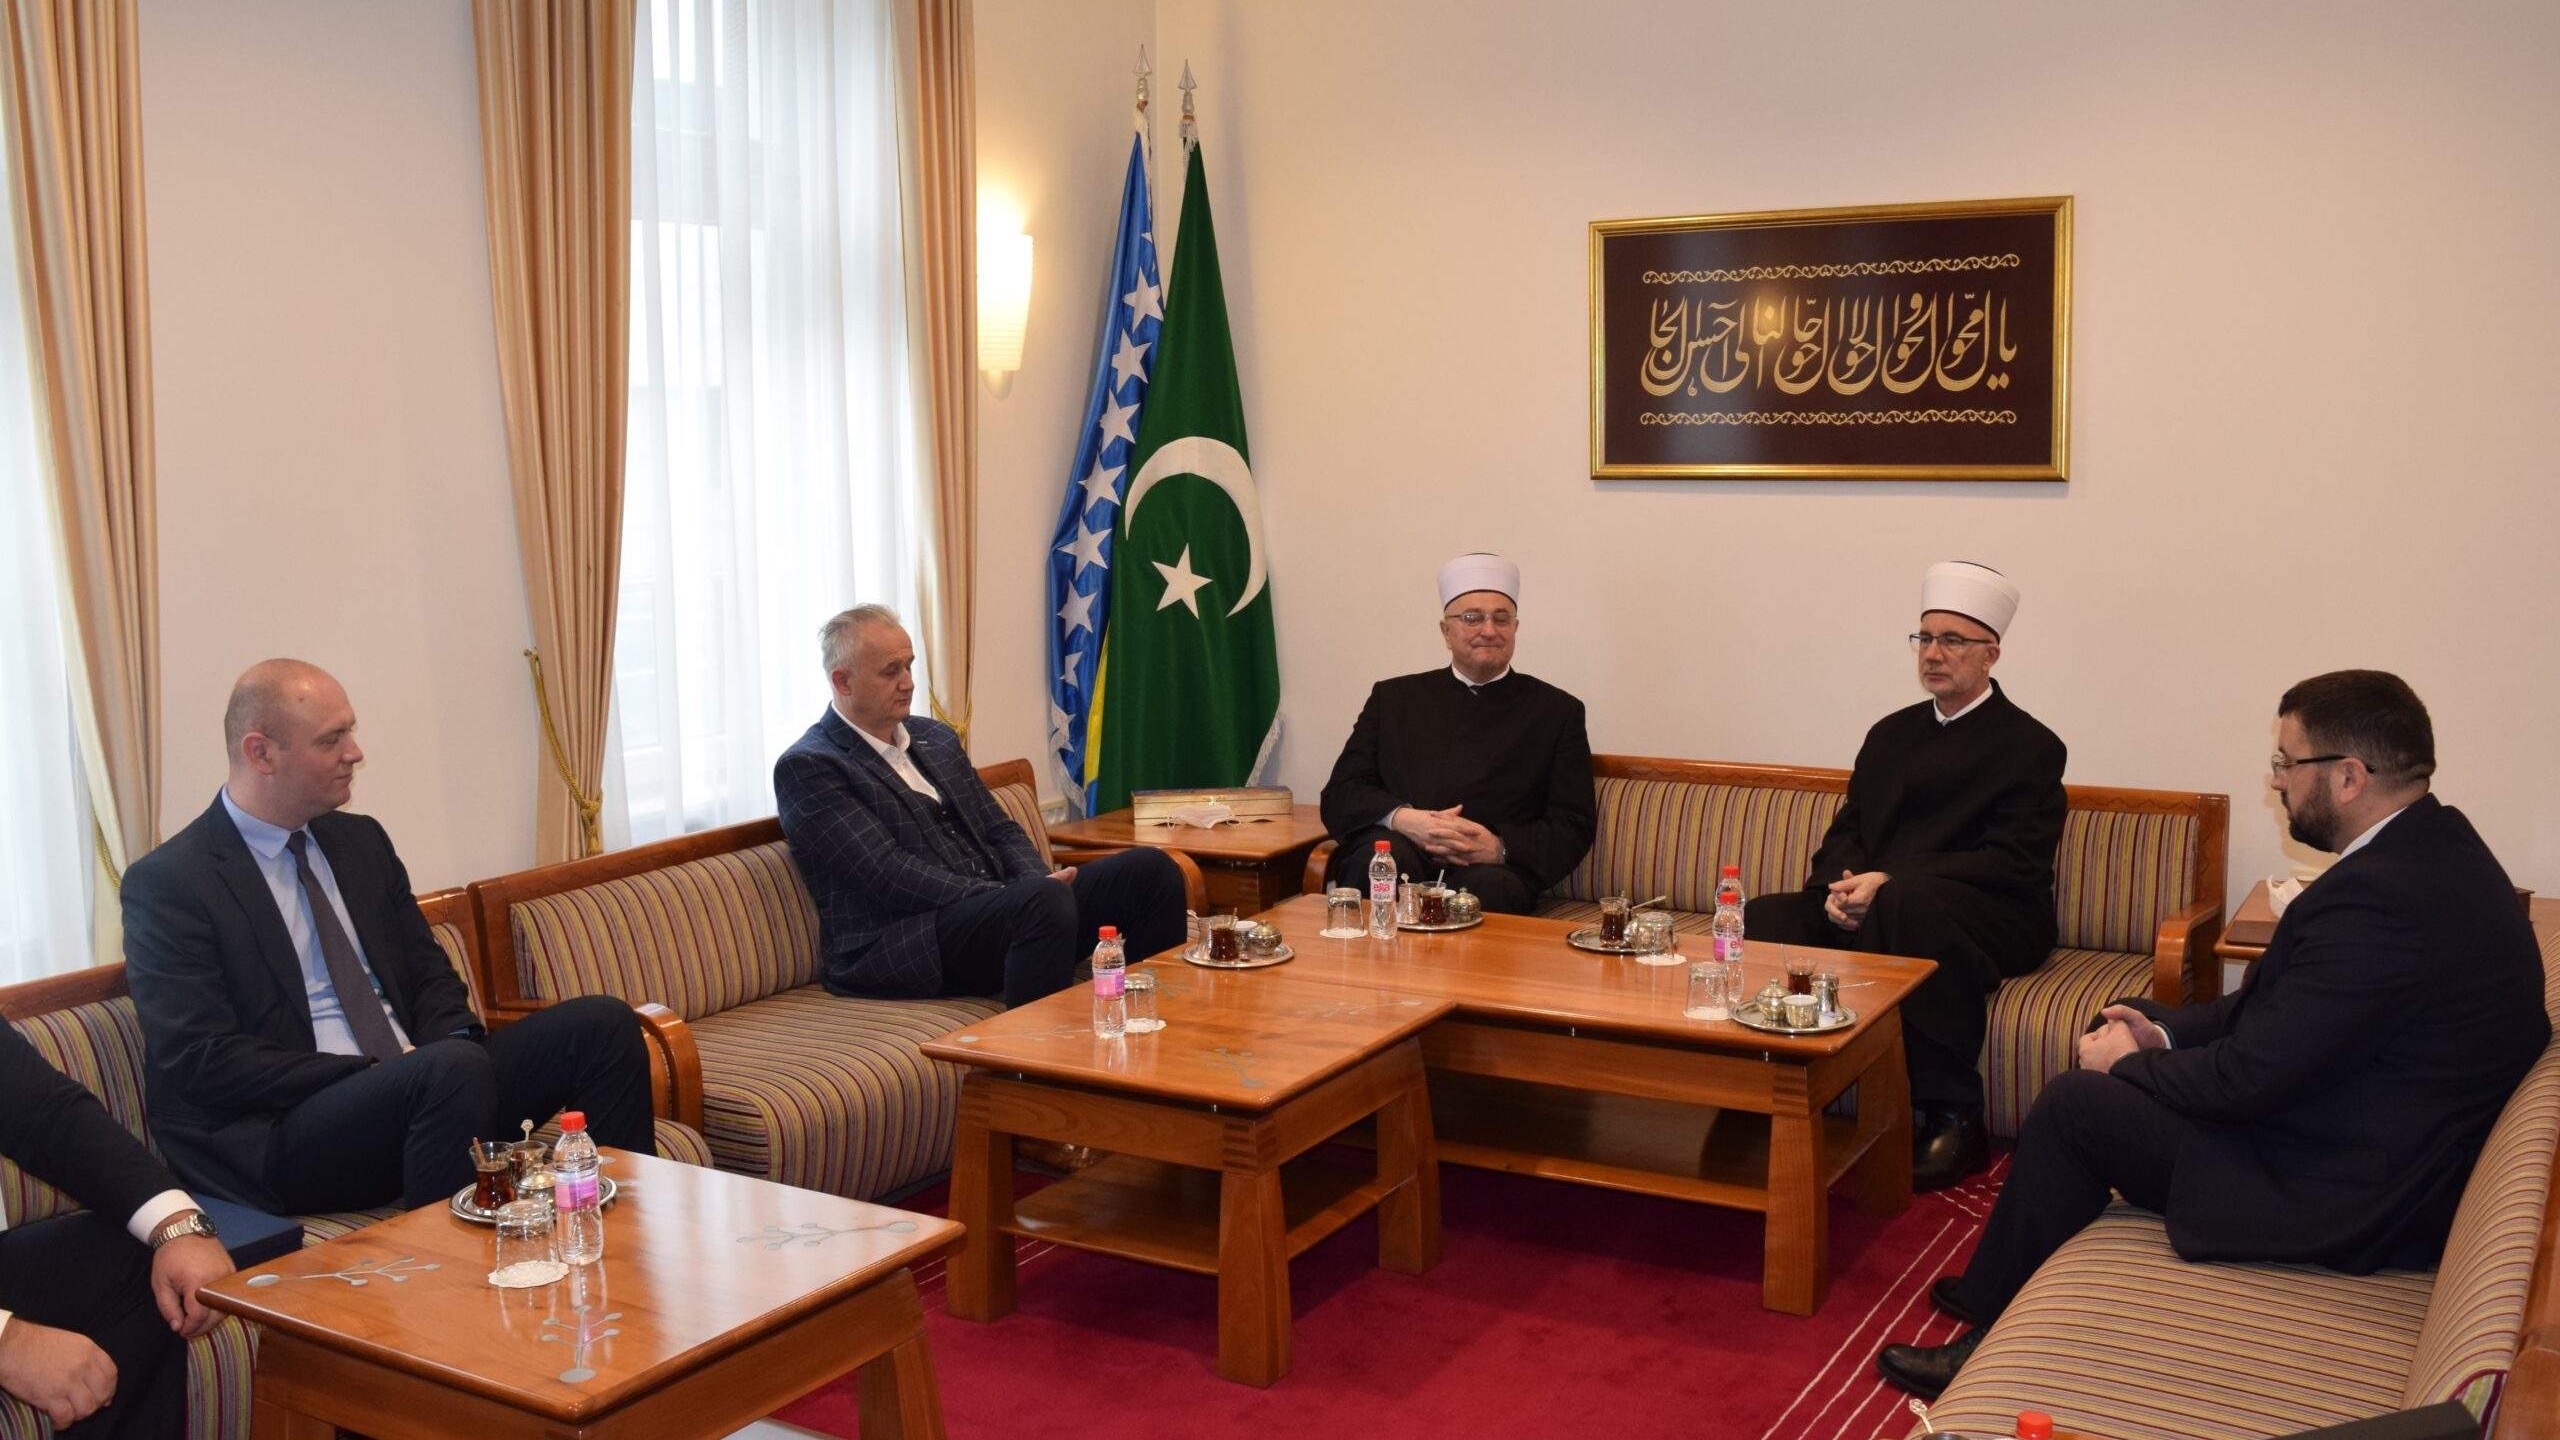 Delegacija Muftijstva zagrebačkog posjetila Muftijstvo tuzlansko